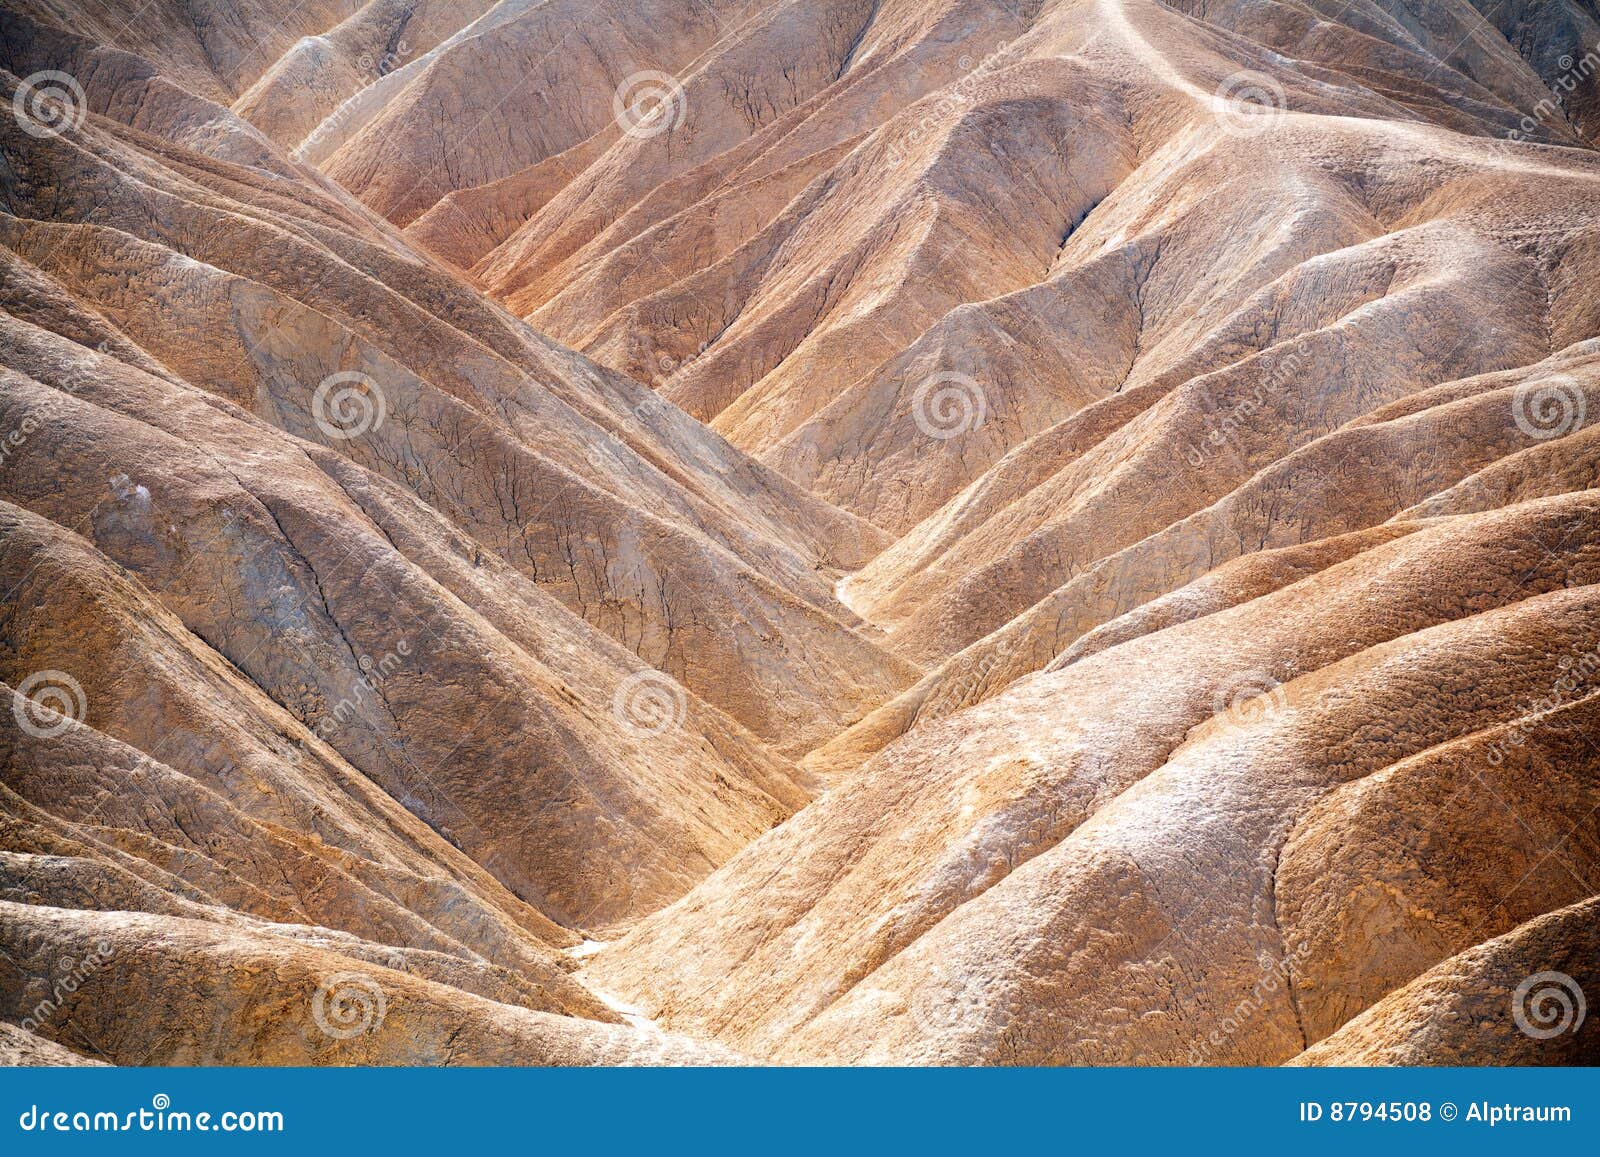 death valley hills